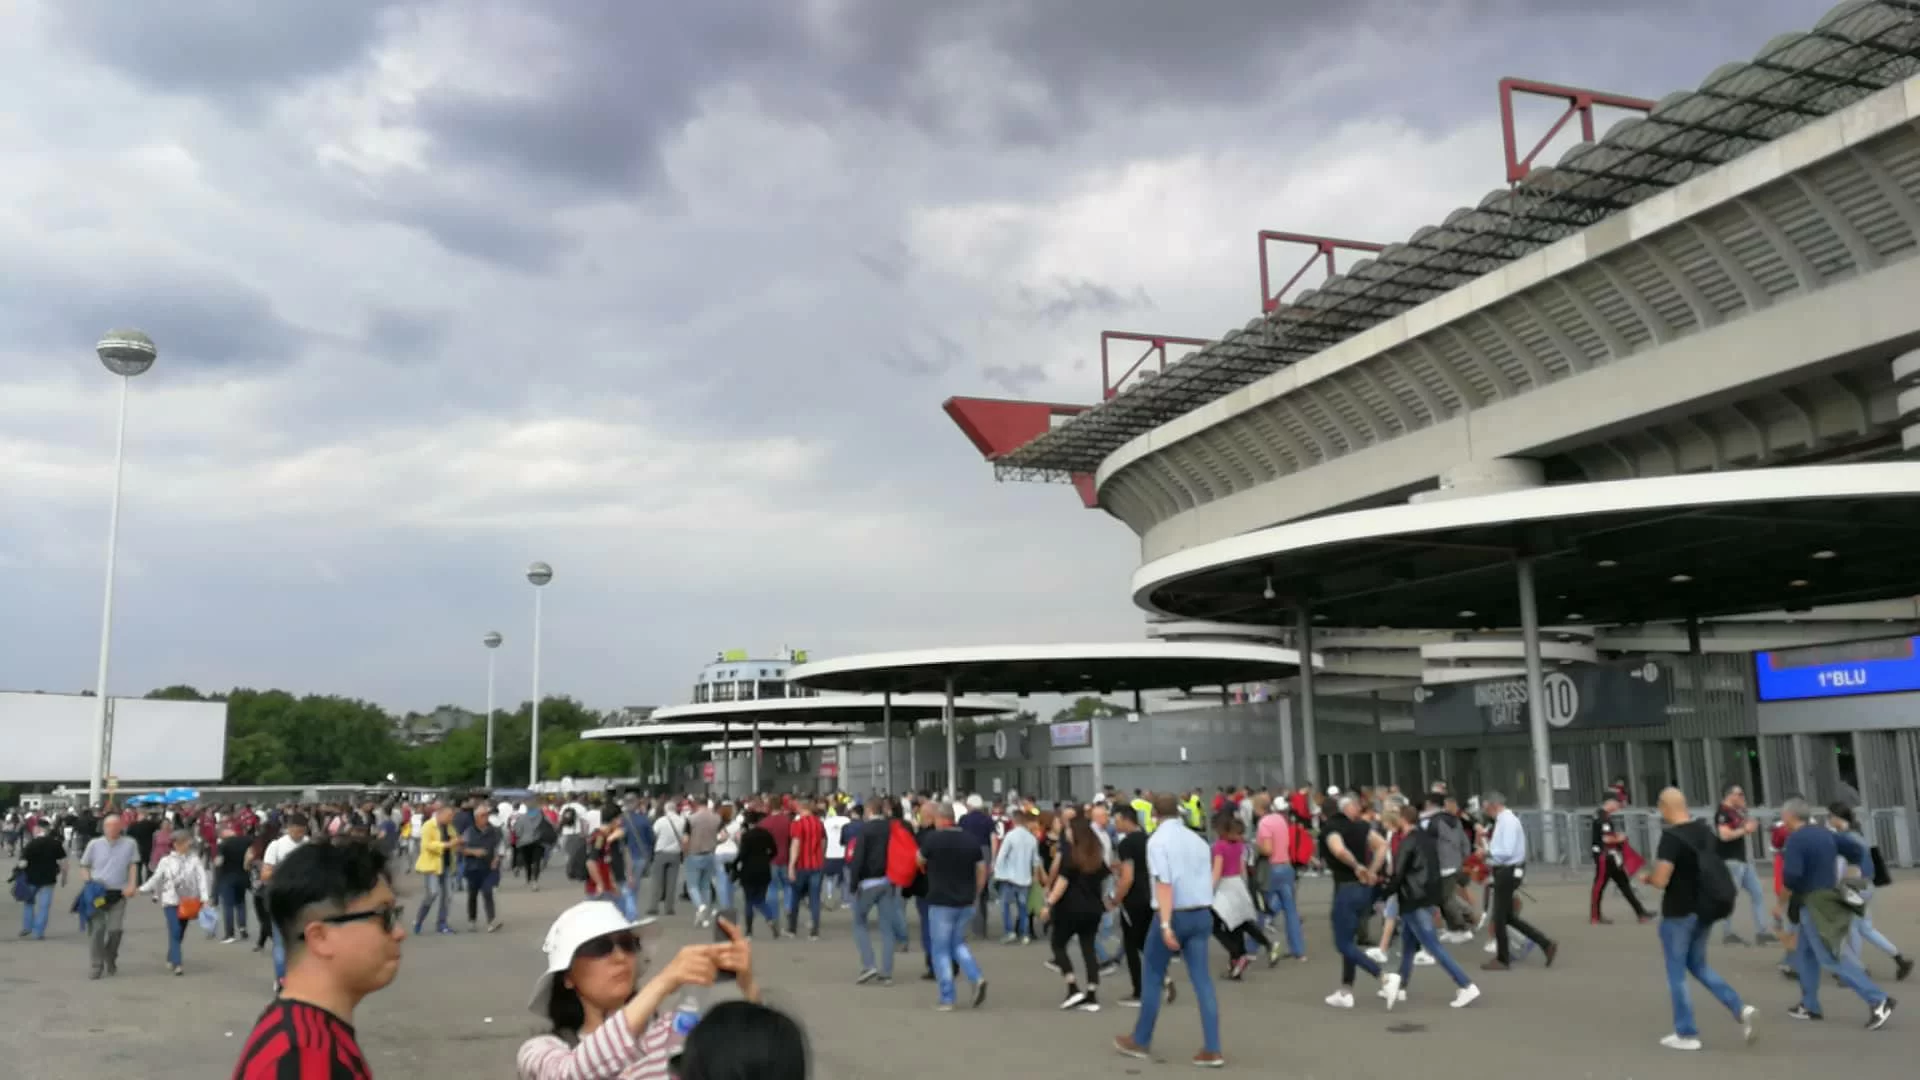 Nuovo stadio non a Milano? Possibile. A metà maggio la verità: la situazione oggi